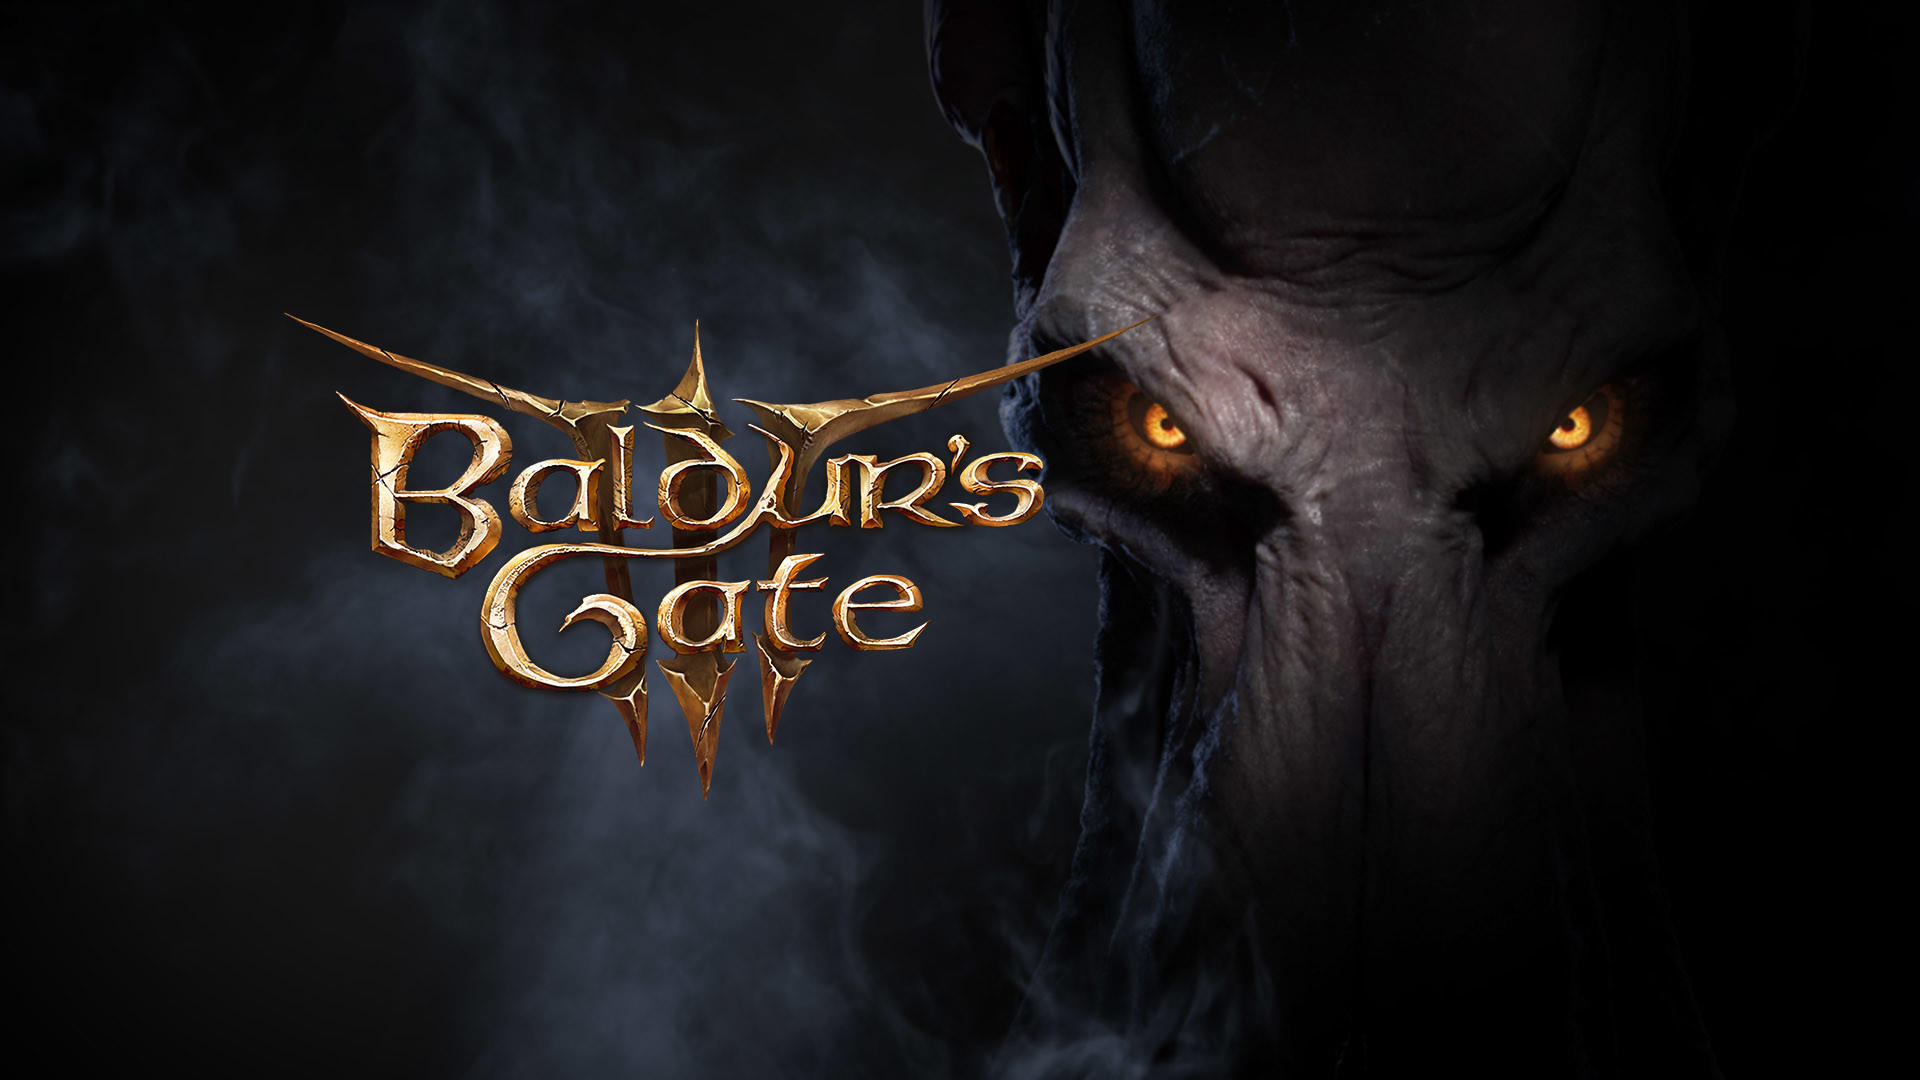 Baldurs's Gate III